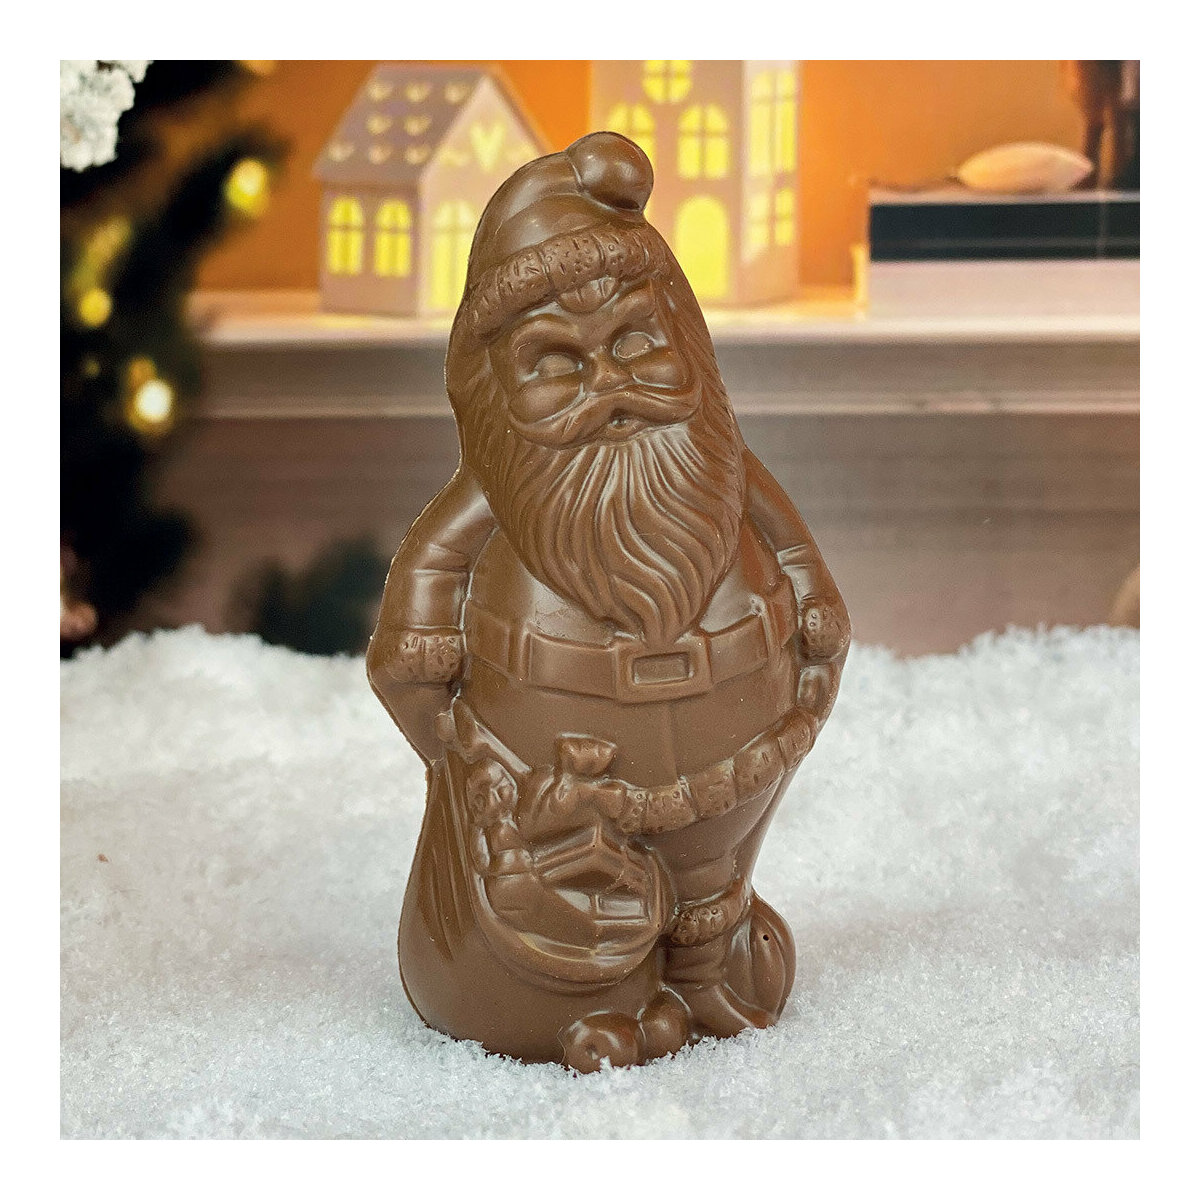 Père Noël en chocolat au lait dans son moule à réutiliser - 60g